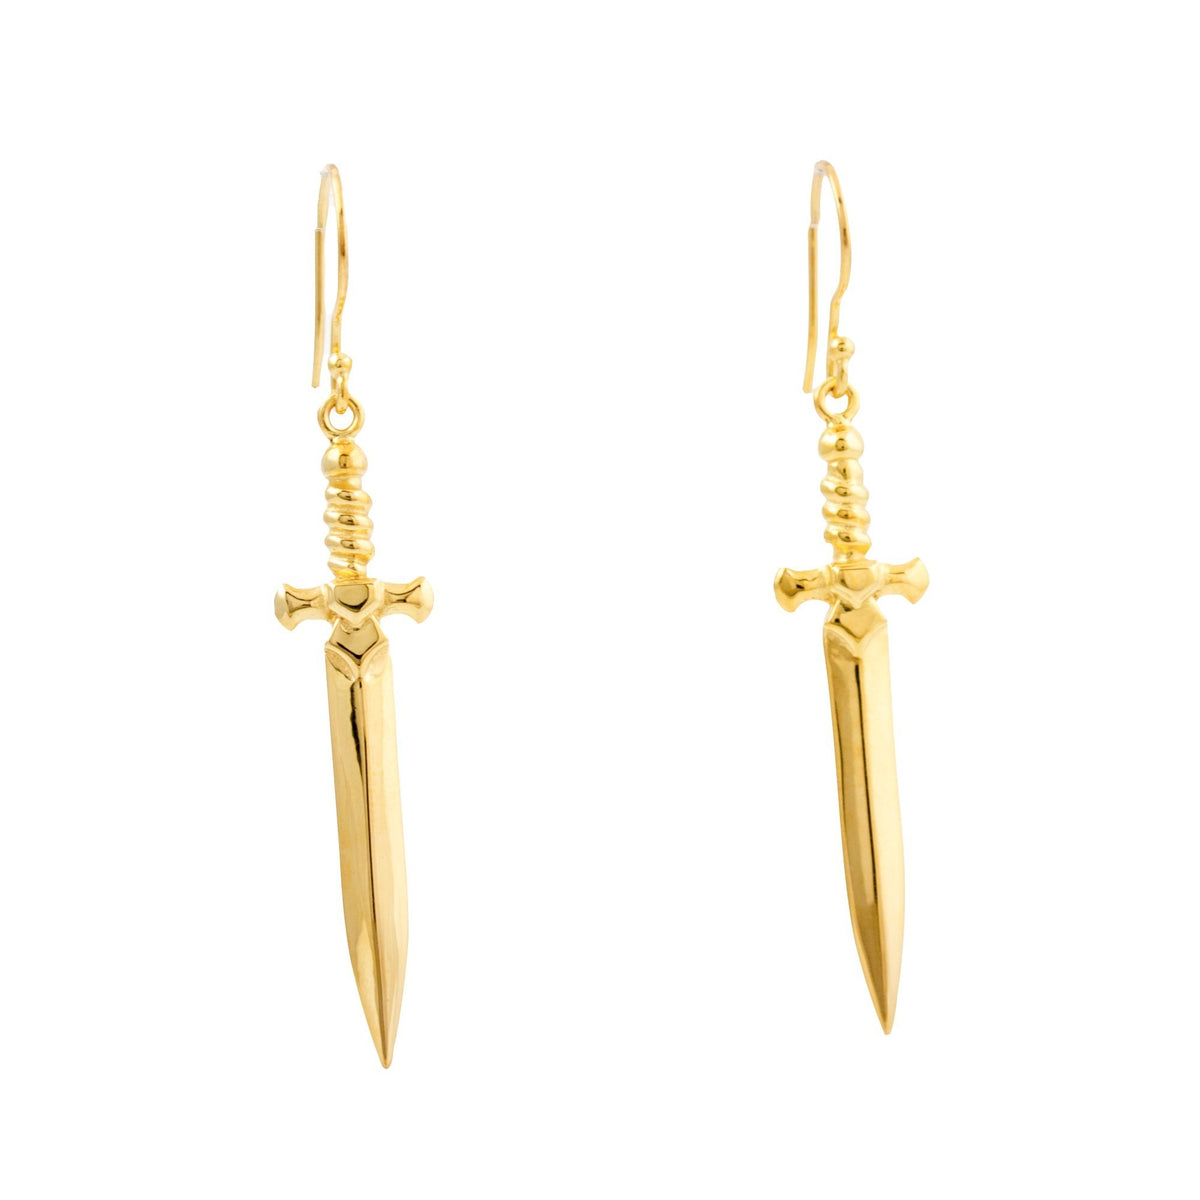 Gold Plate "Shortsword" Earrings - Kingdom Jewelry